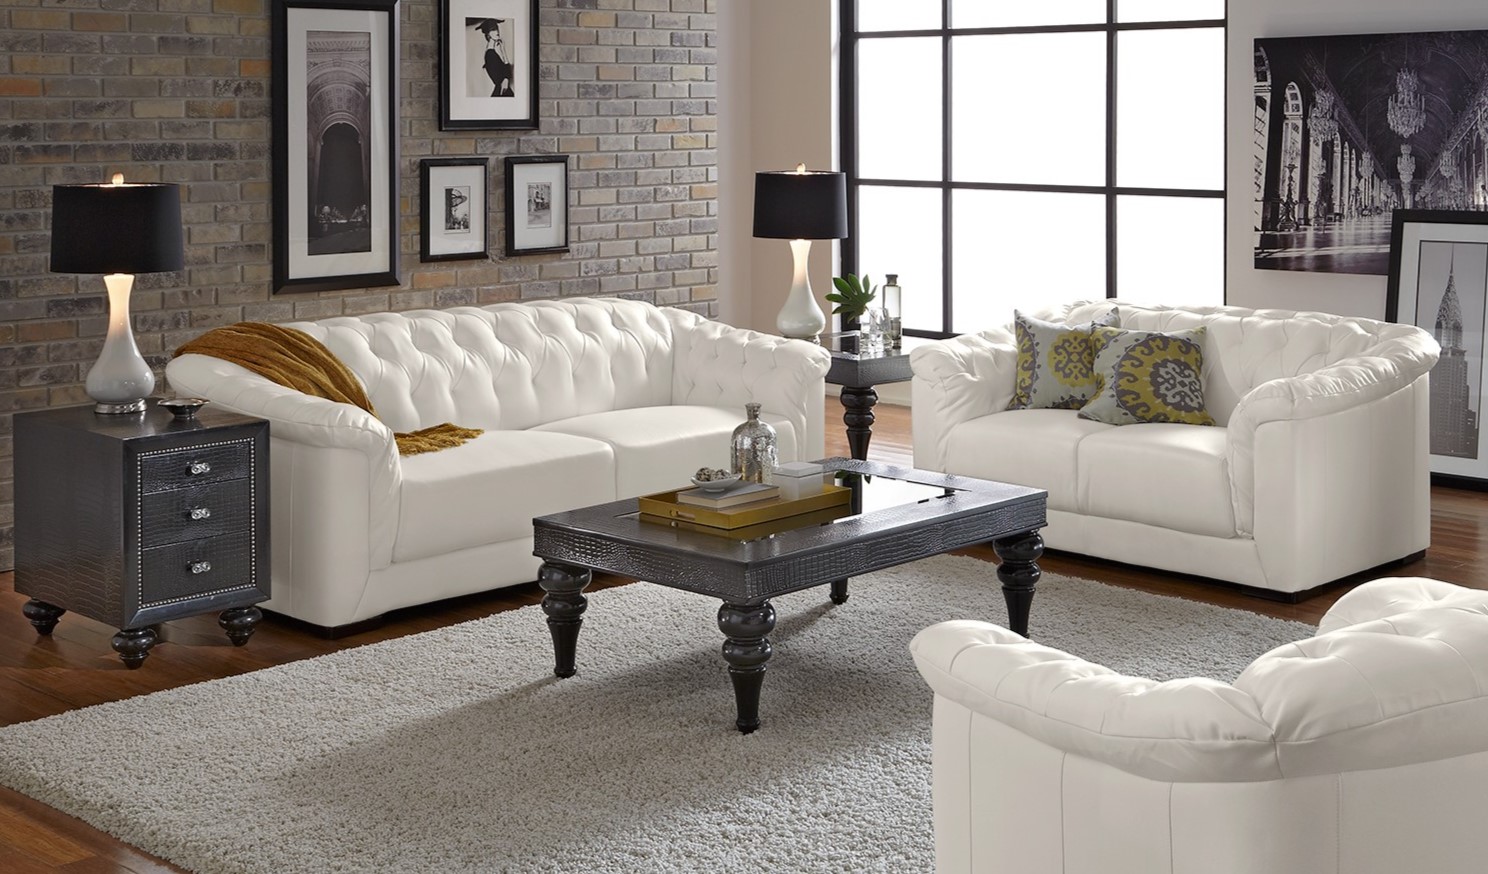 На белых диванах будут стильно смотреться подушки с принтом и контрастный плед